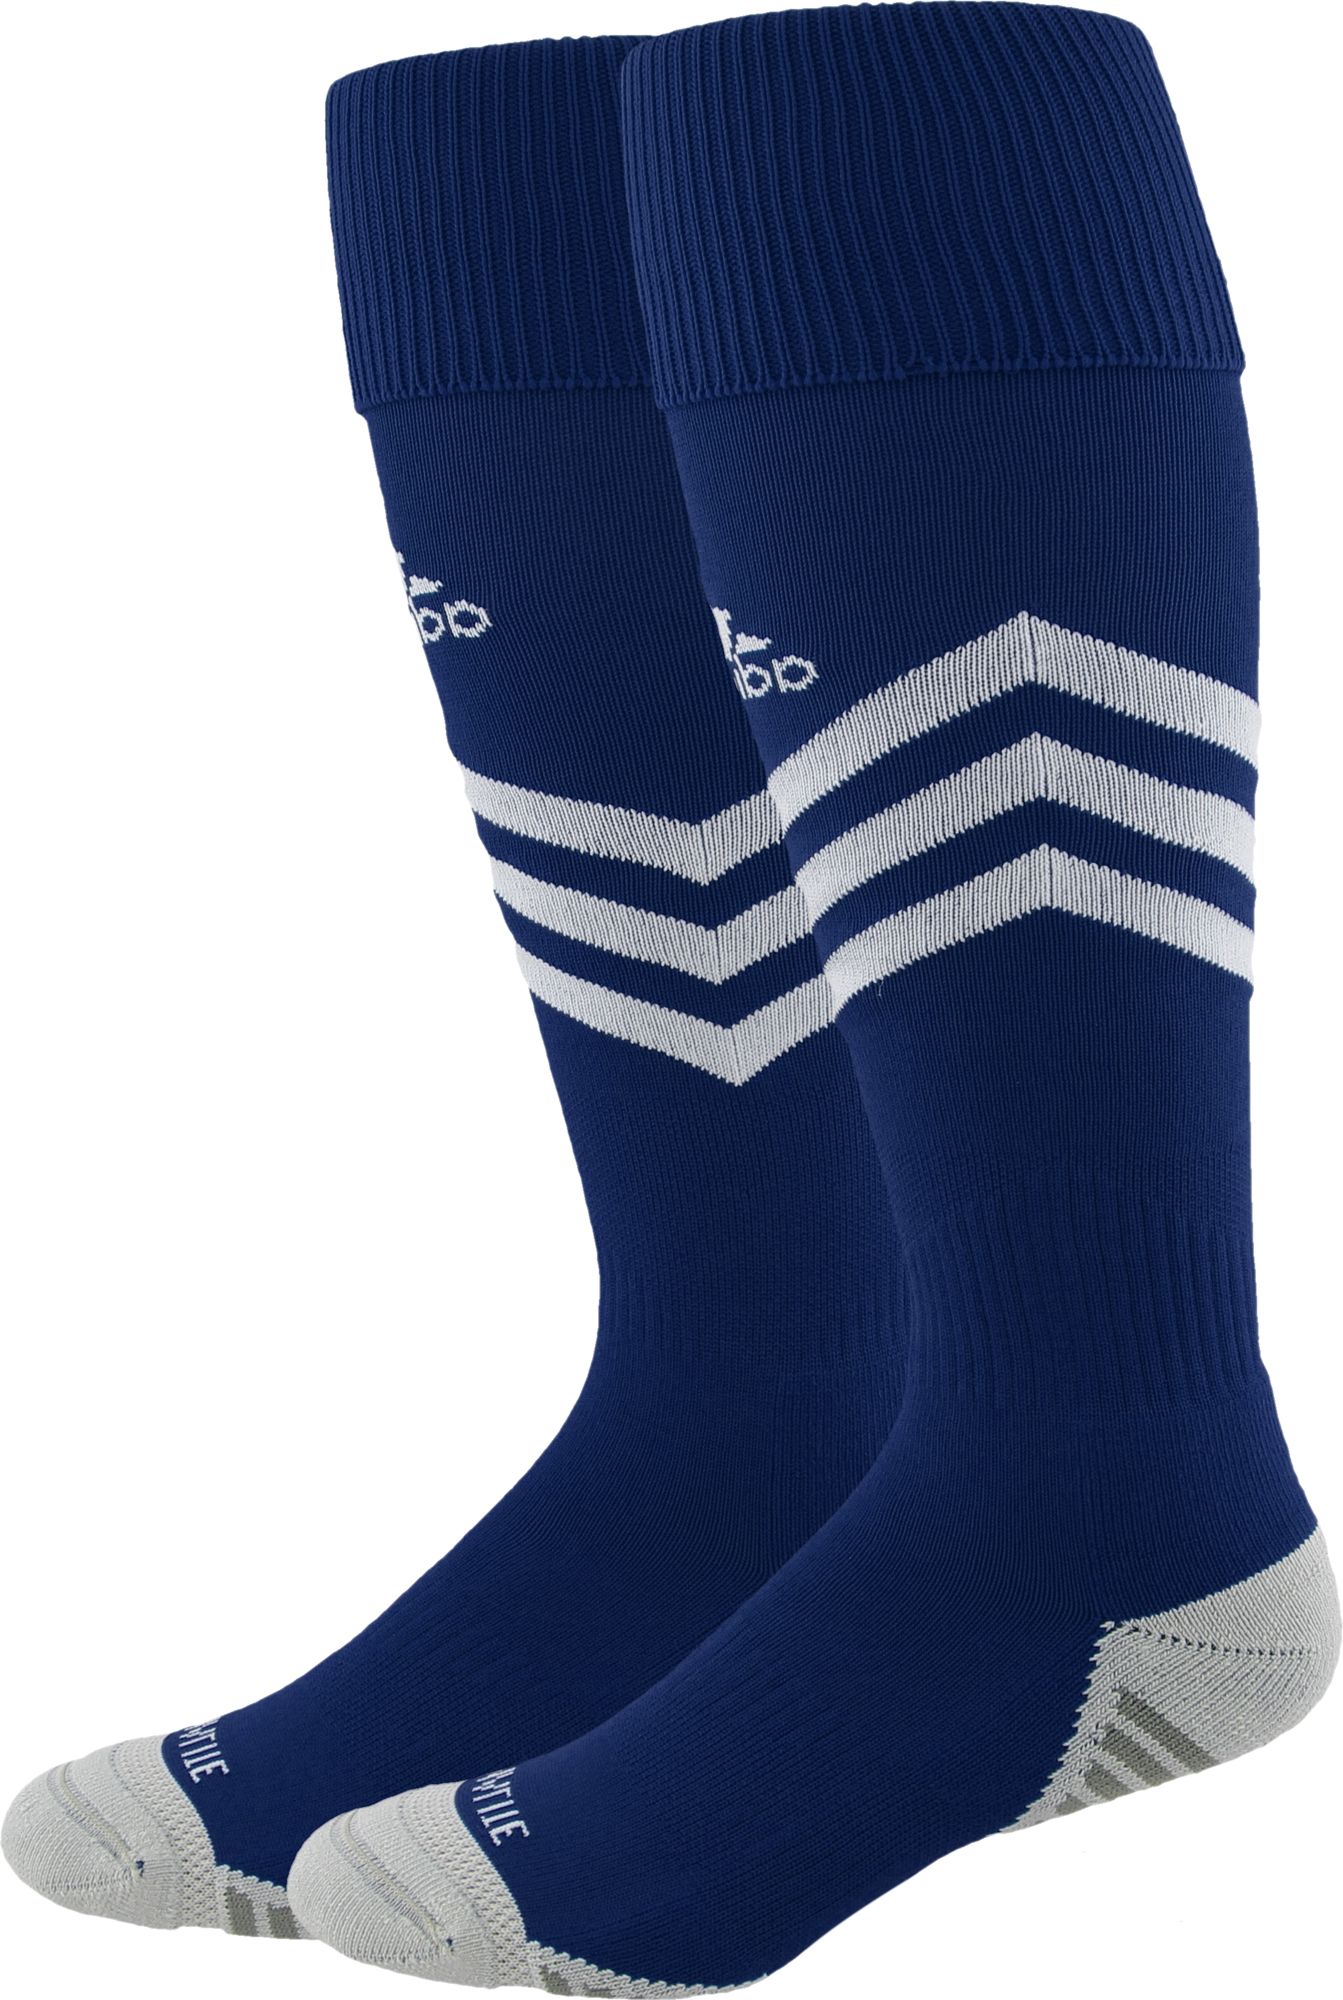 light blue adidas soccer socks